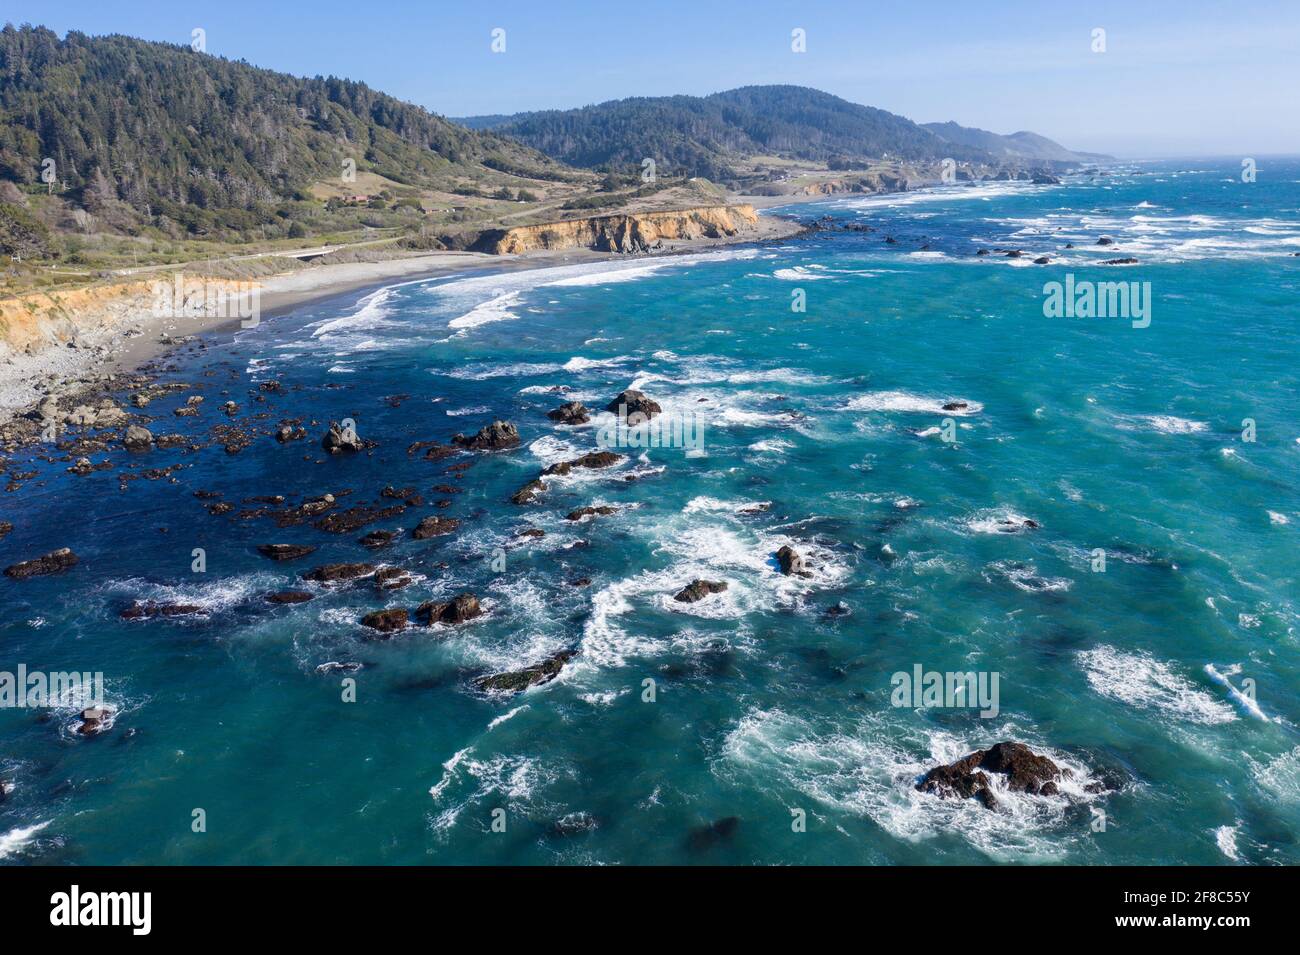 Der Pazifische Ozean trifft in Mendocino auf die felsige Küste Nordkaliforniens. Diese malerische Region ist bekannt für ihre wunderschönen, zerklüfteten Küsten. Stockfoto